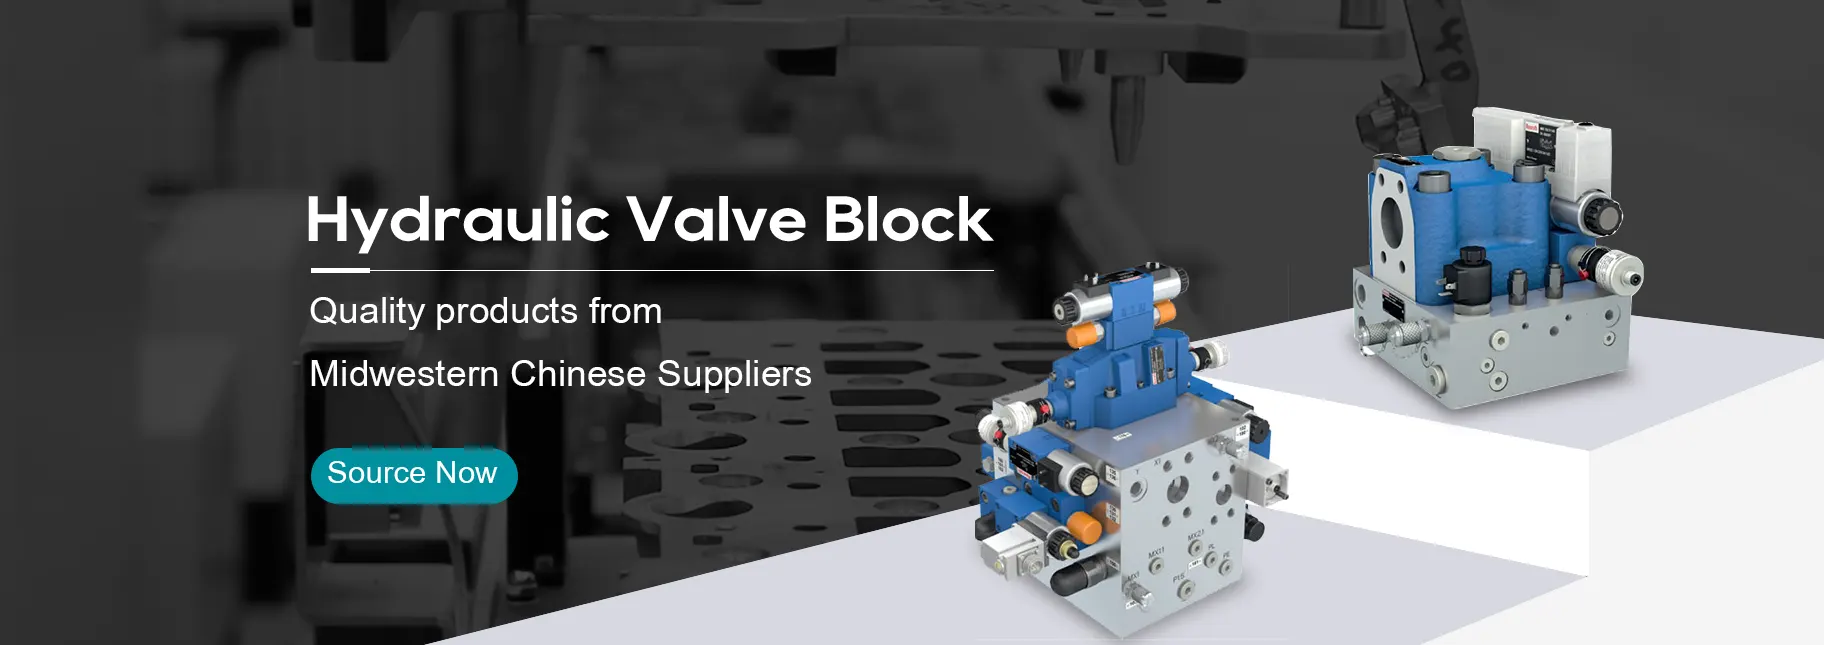 Hydraulic Valve Block Supplier